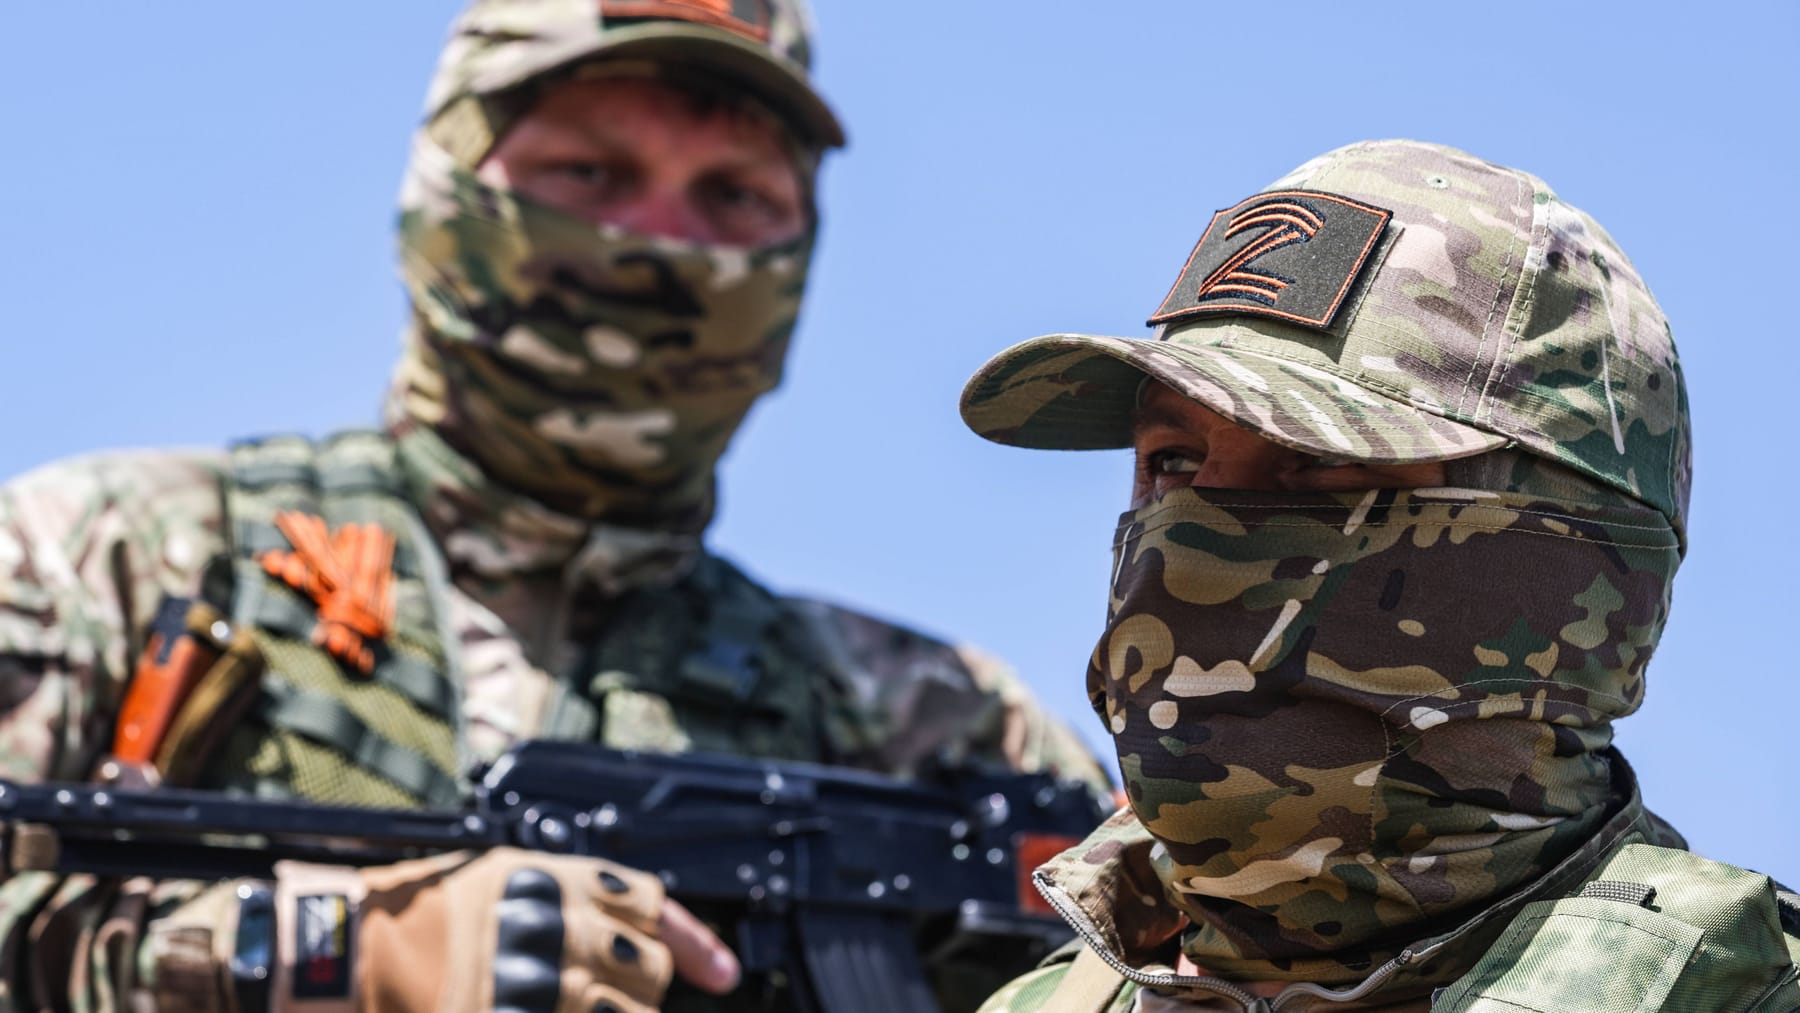 Es heißt, betrunkene russische Soldaten hätten FSB-Offiziere erschossen